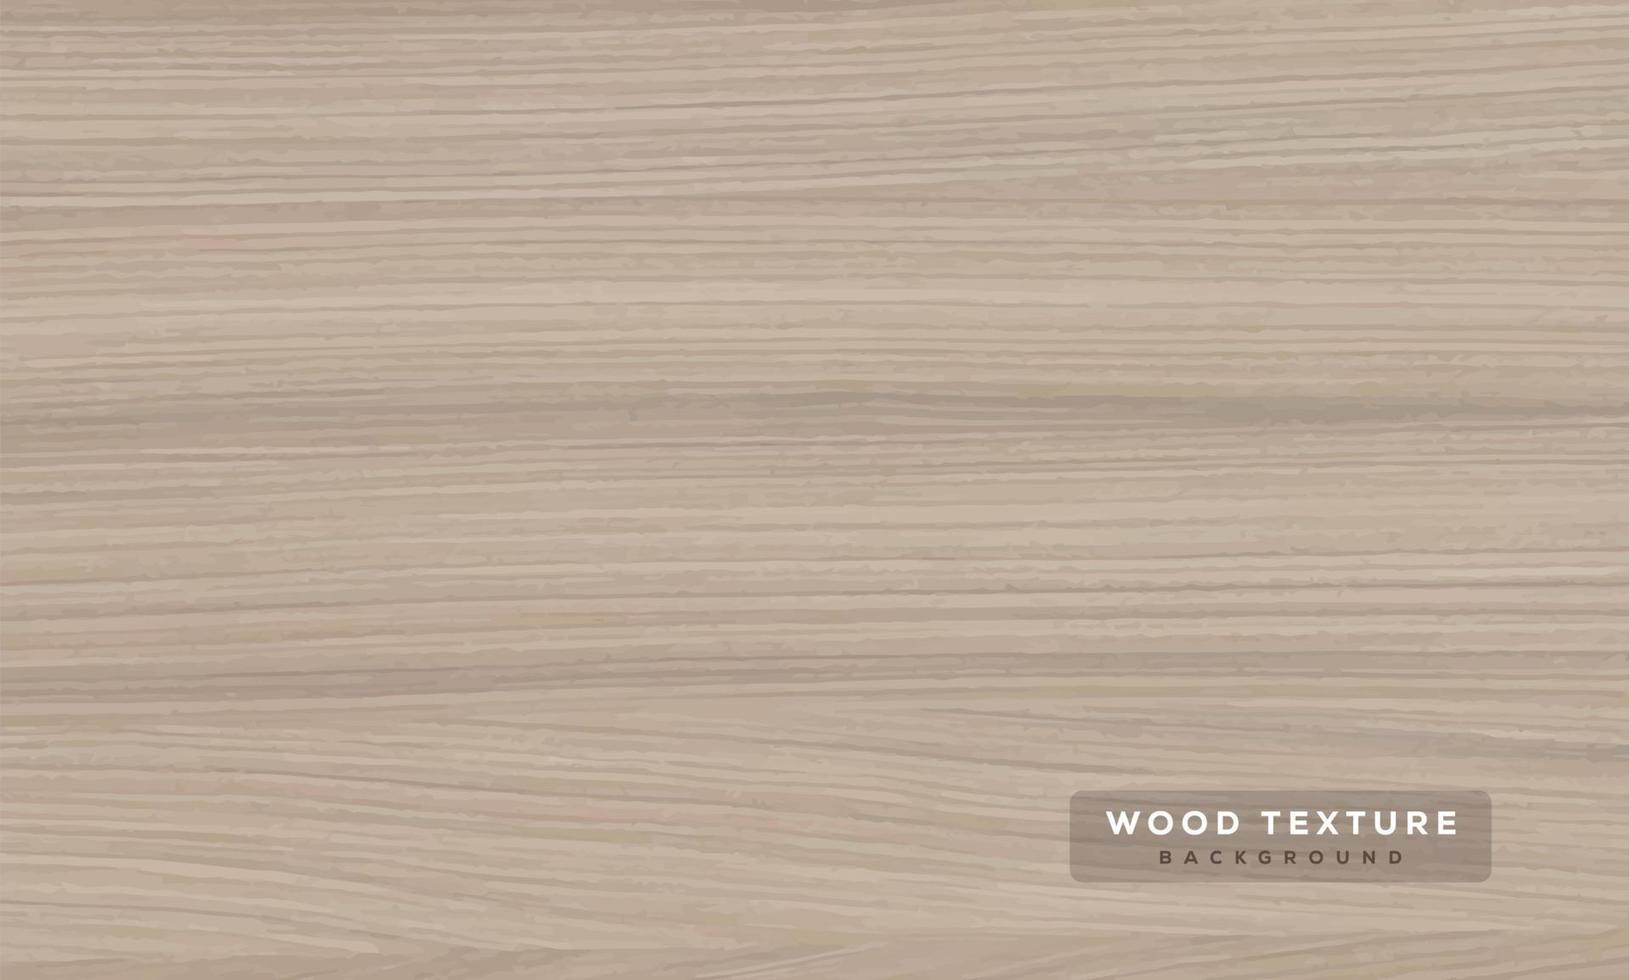 textura de madera vectorial textura de madera realista, 3d. elemento para su diseño, publicidad.ilustración vectorial. vector